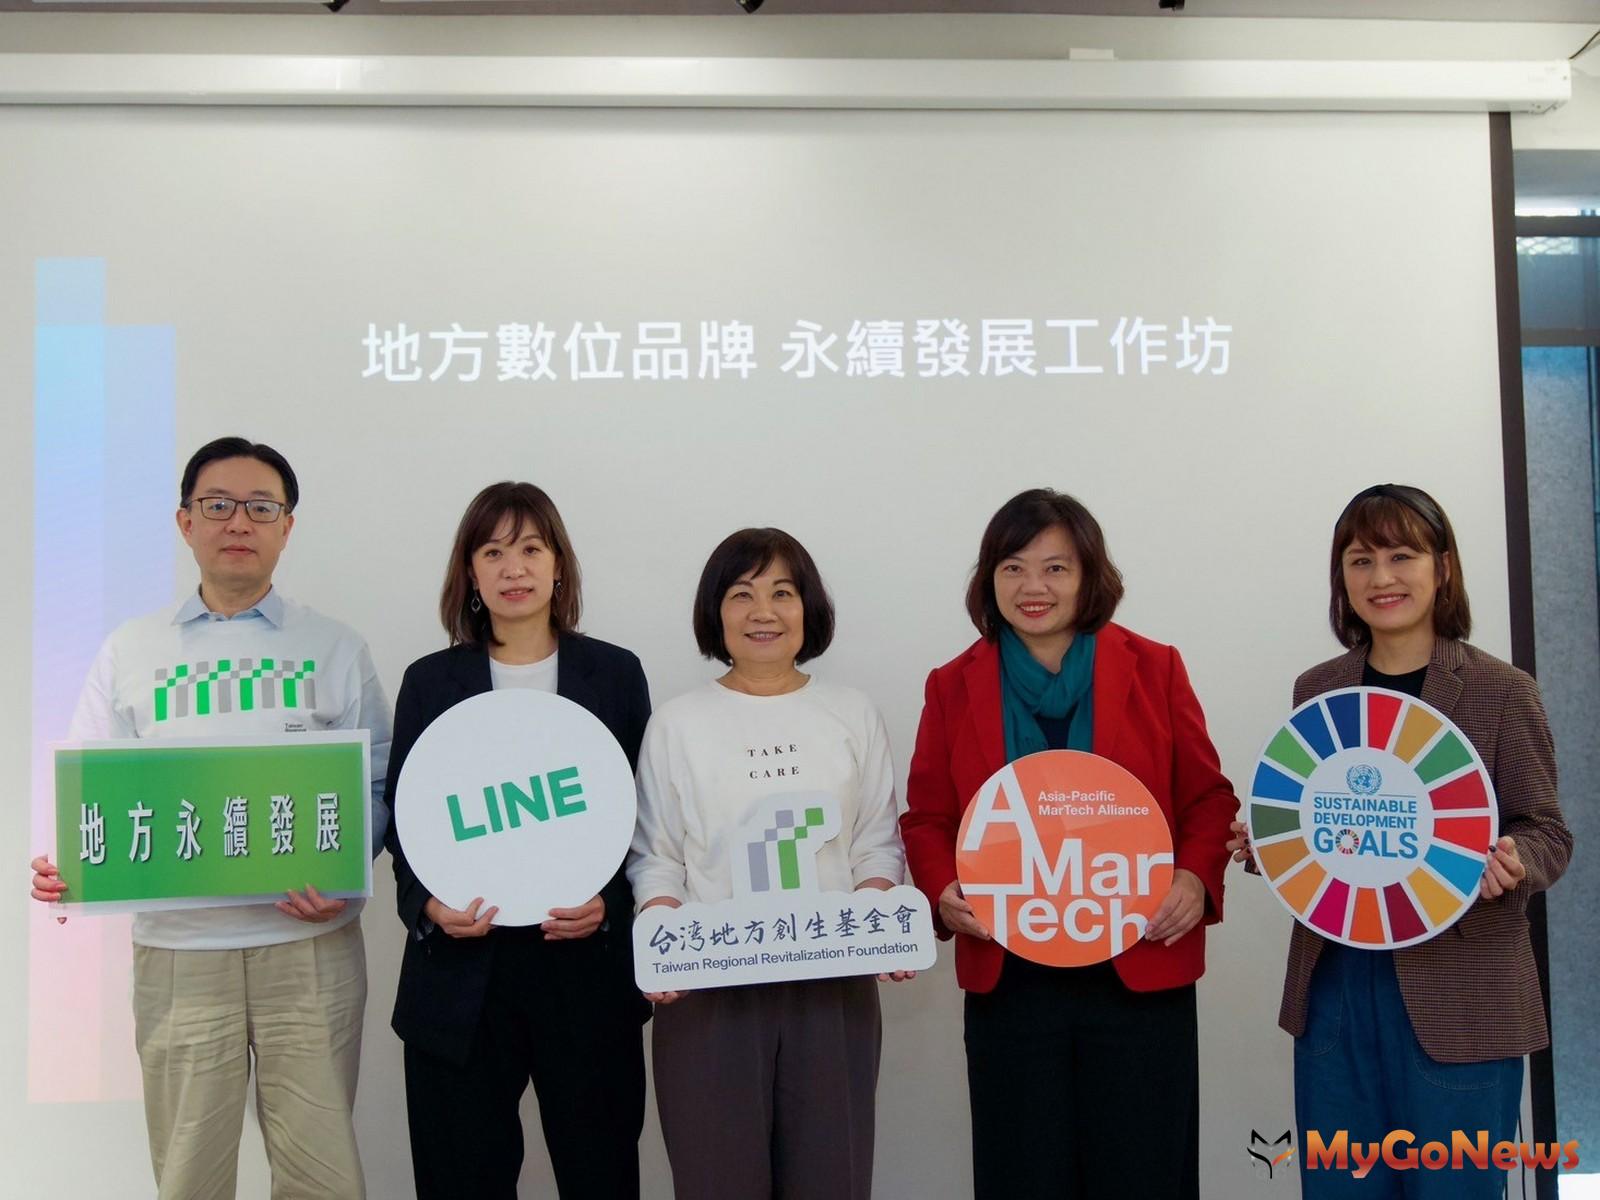 台灣地方創生基金會攜手LINE台灣啟動「LINE數位創生計畫」。(圖/台灣地方創生基金會) MyGoNews房地產新聞 市場快訊